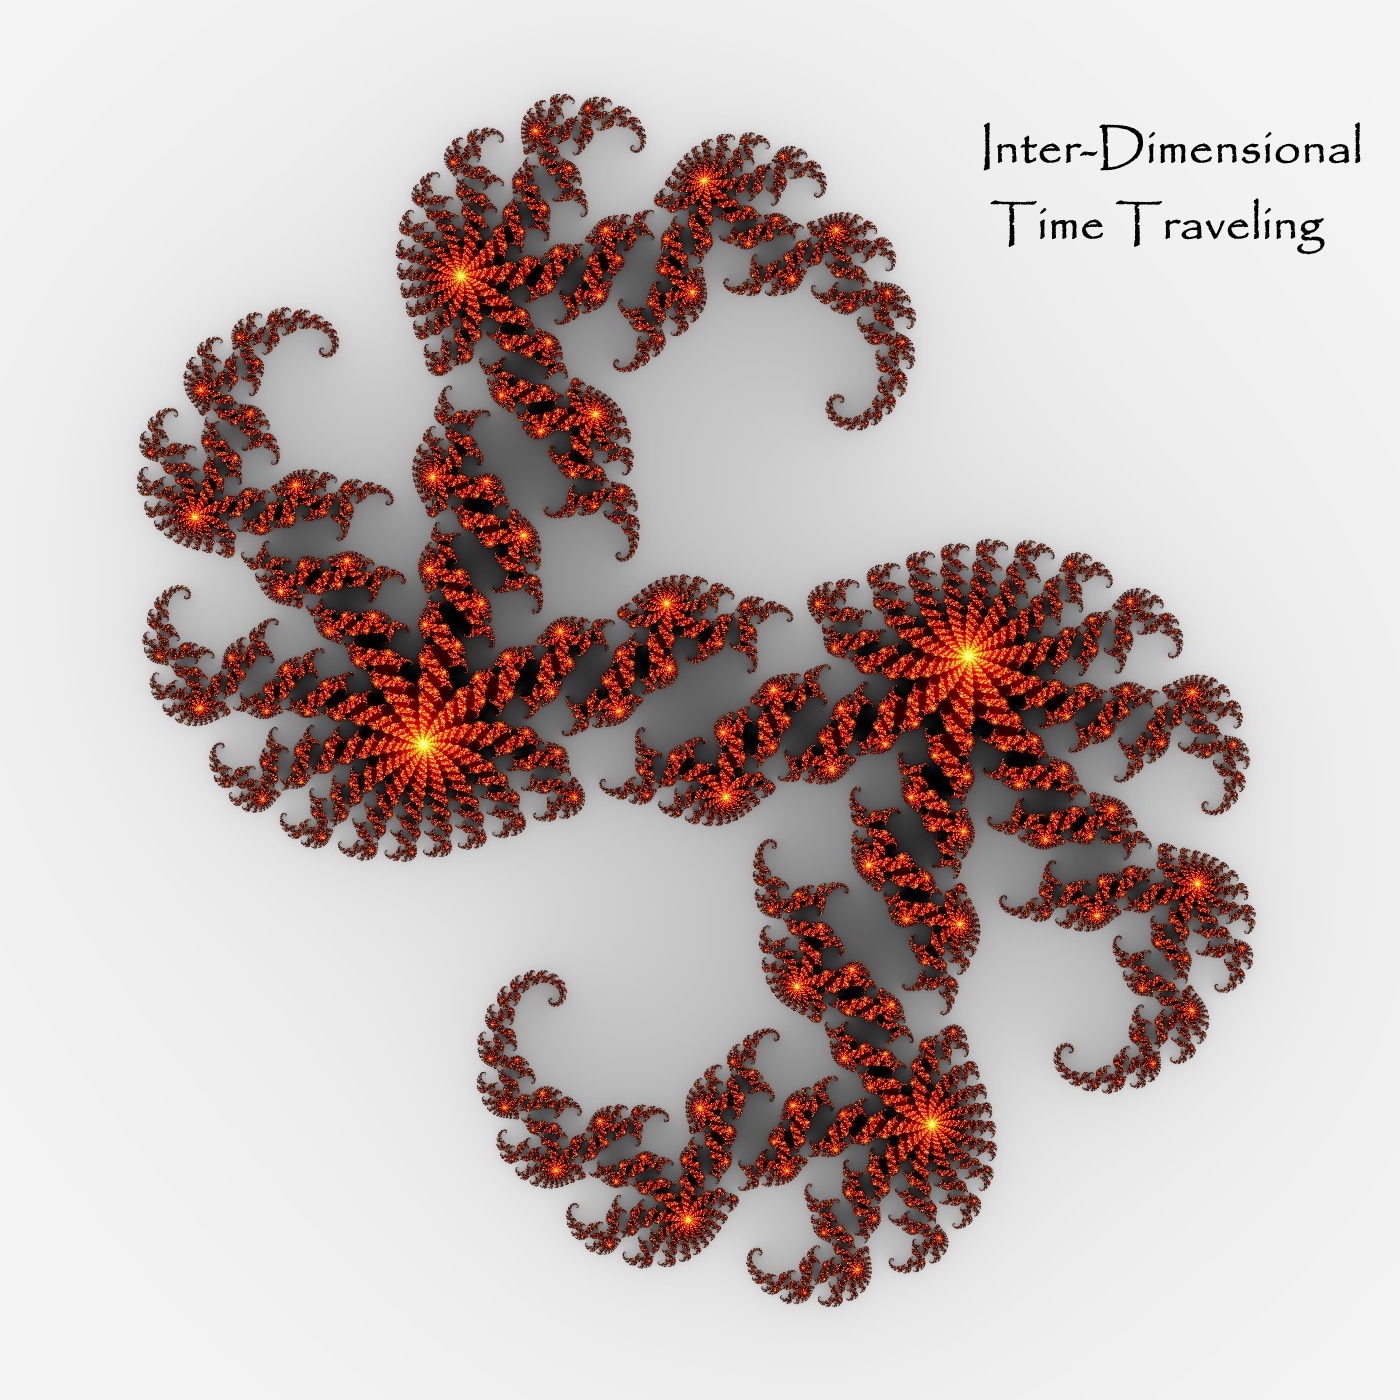 J D Emmanuel - Inter-Dimensional Time Traveling